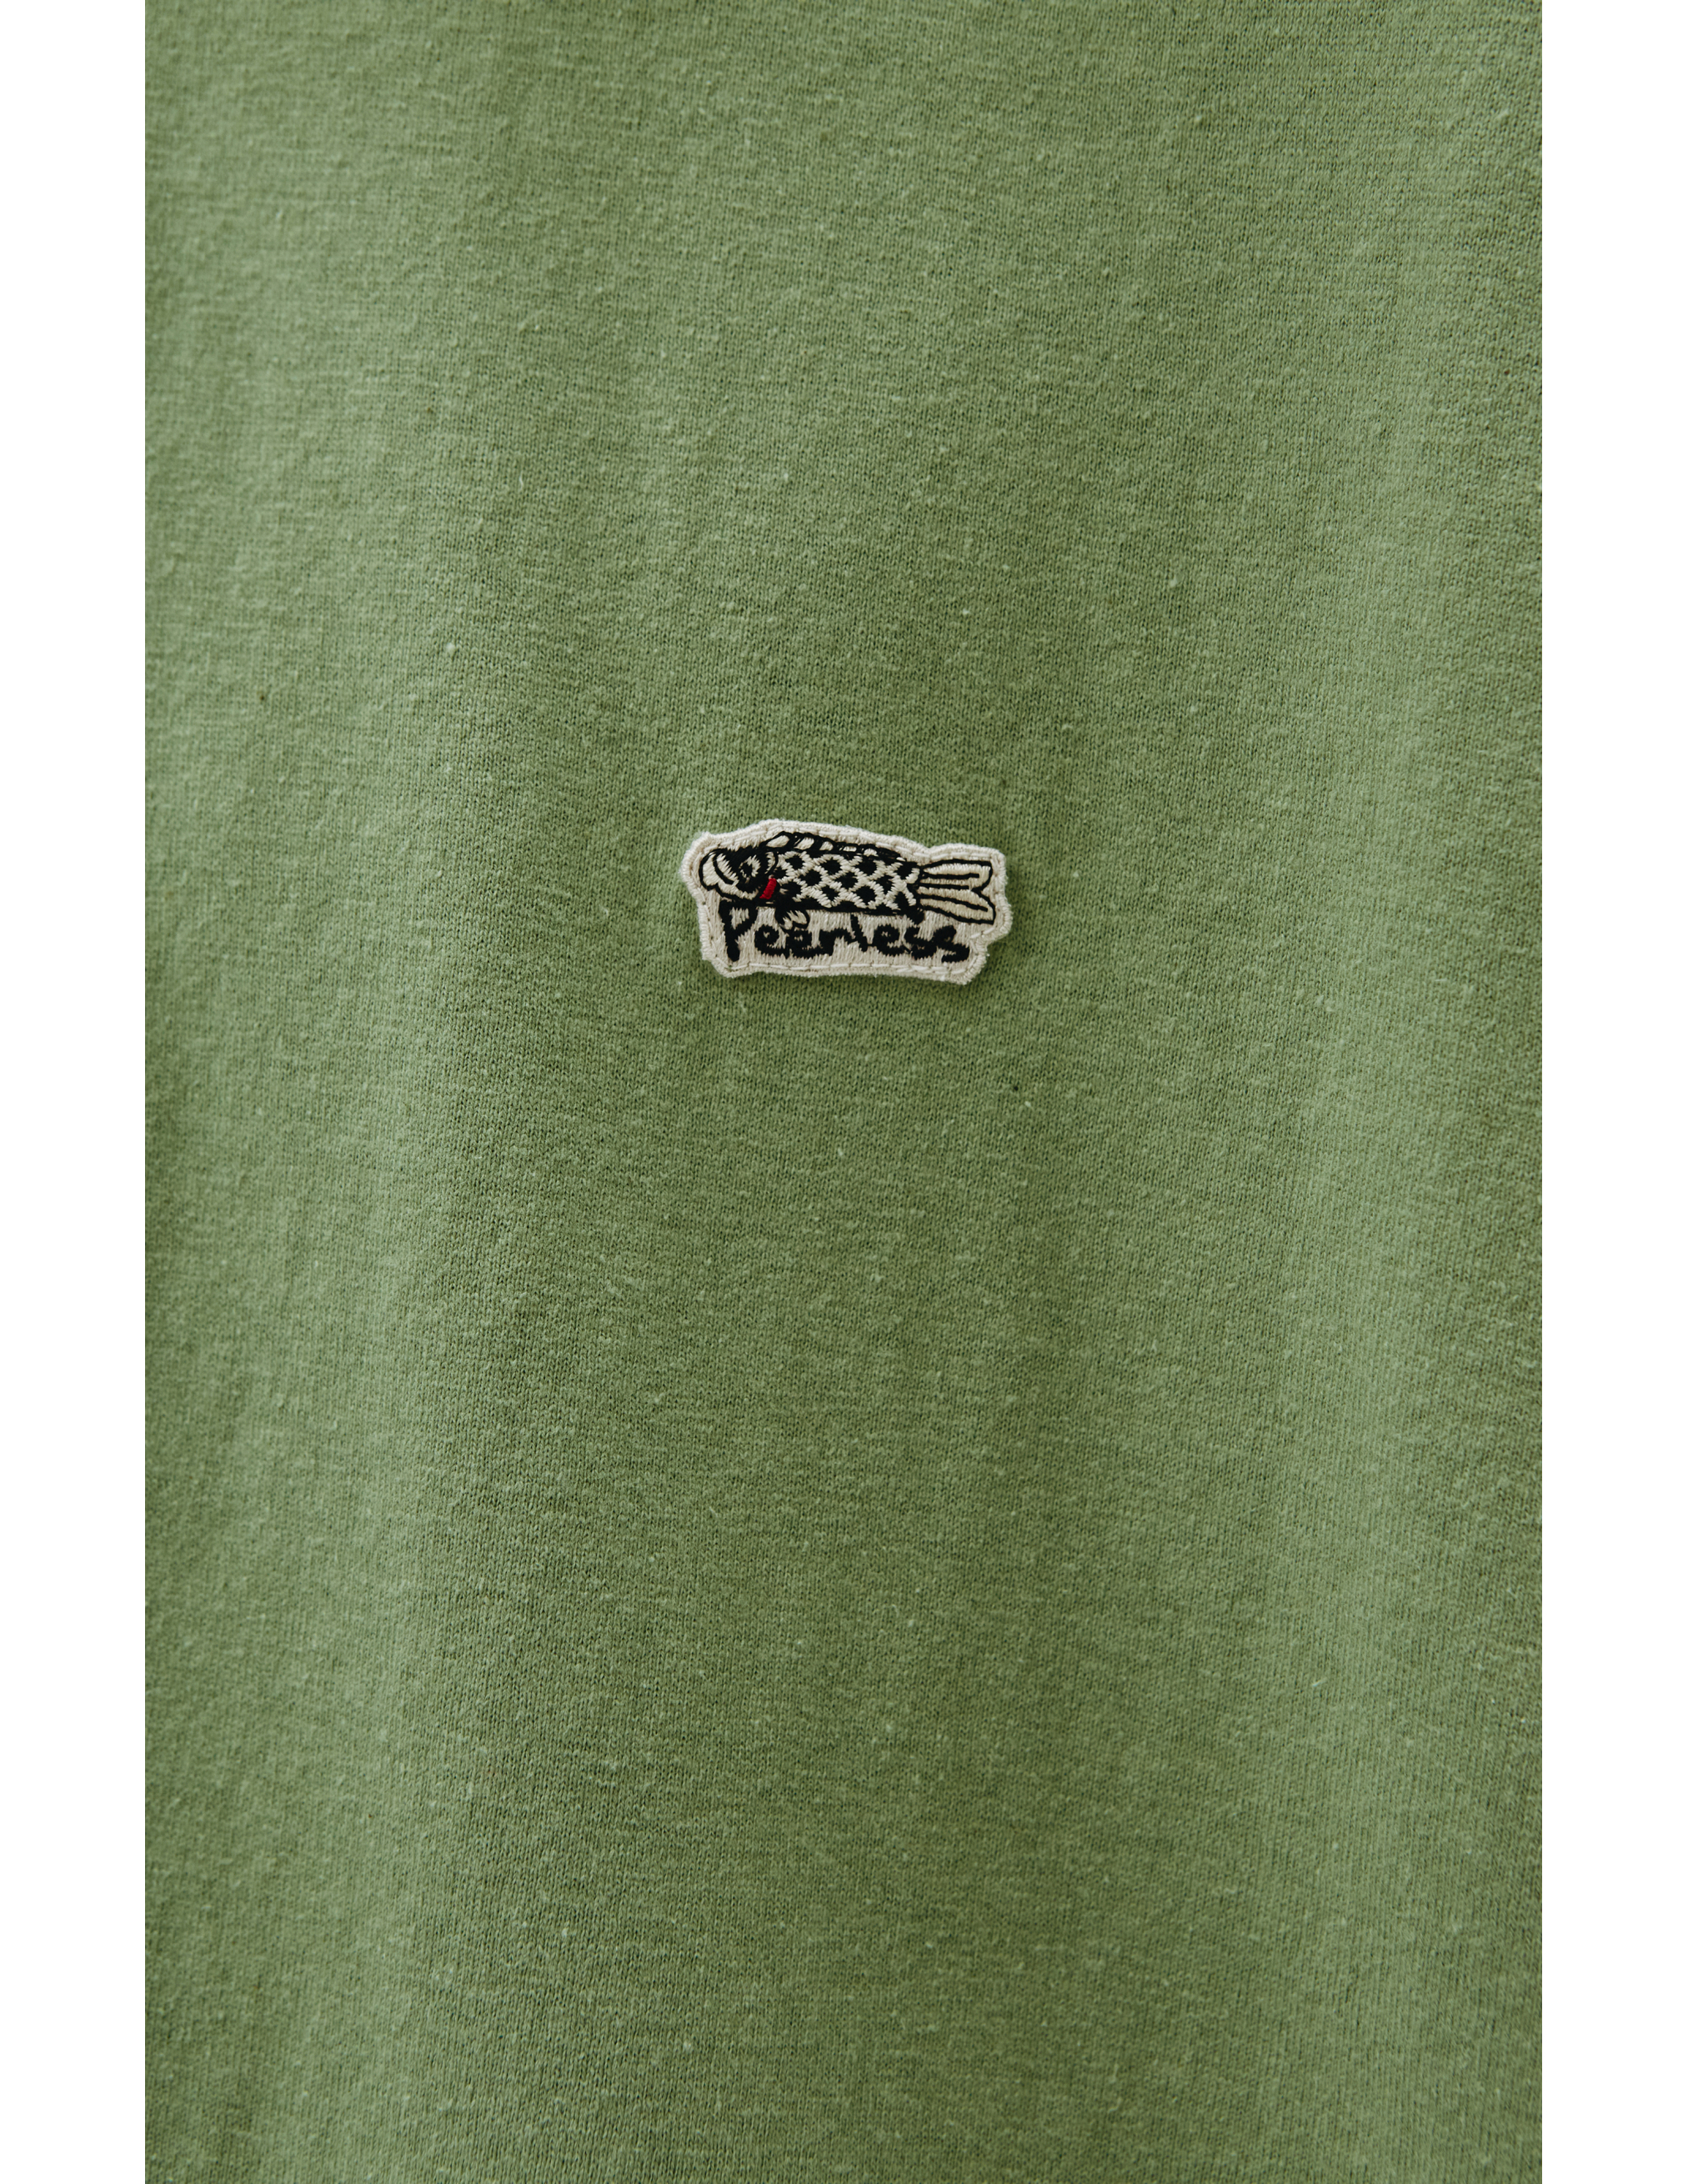 Поло Jumbo Weller с вышивкой visvim 0122105010018/l.grn, размер 5 0122105010018/l.grn - фото 4